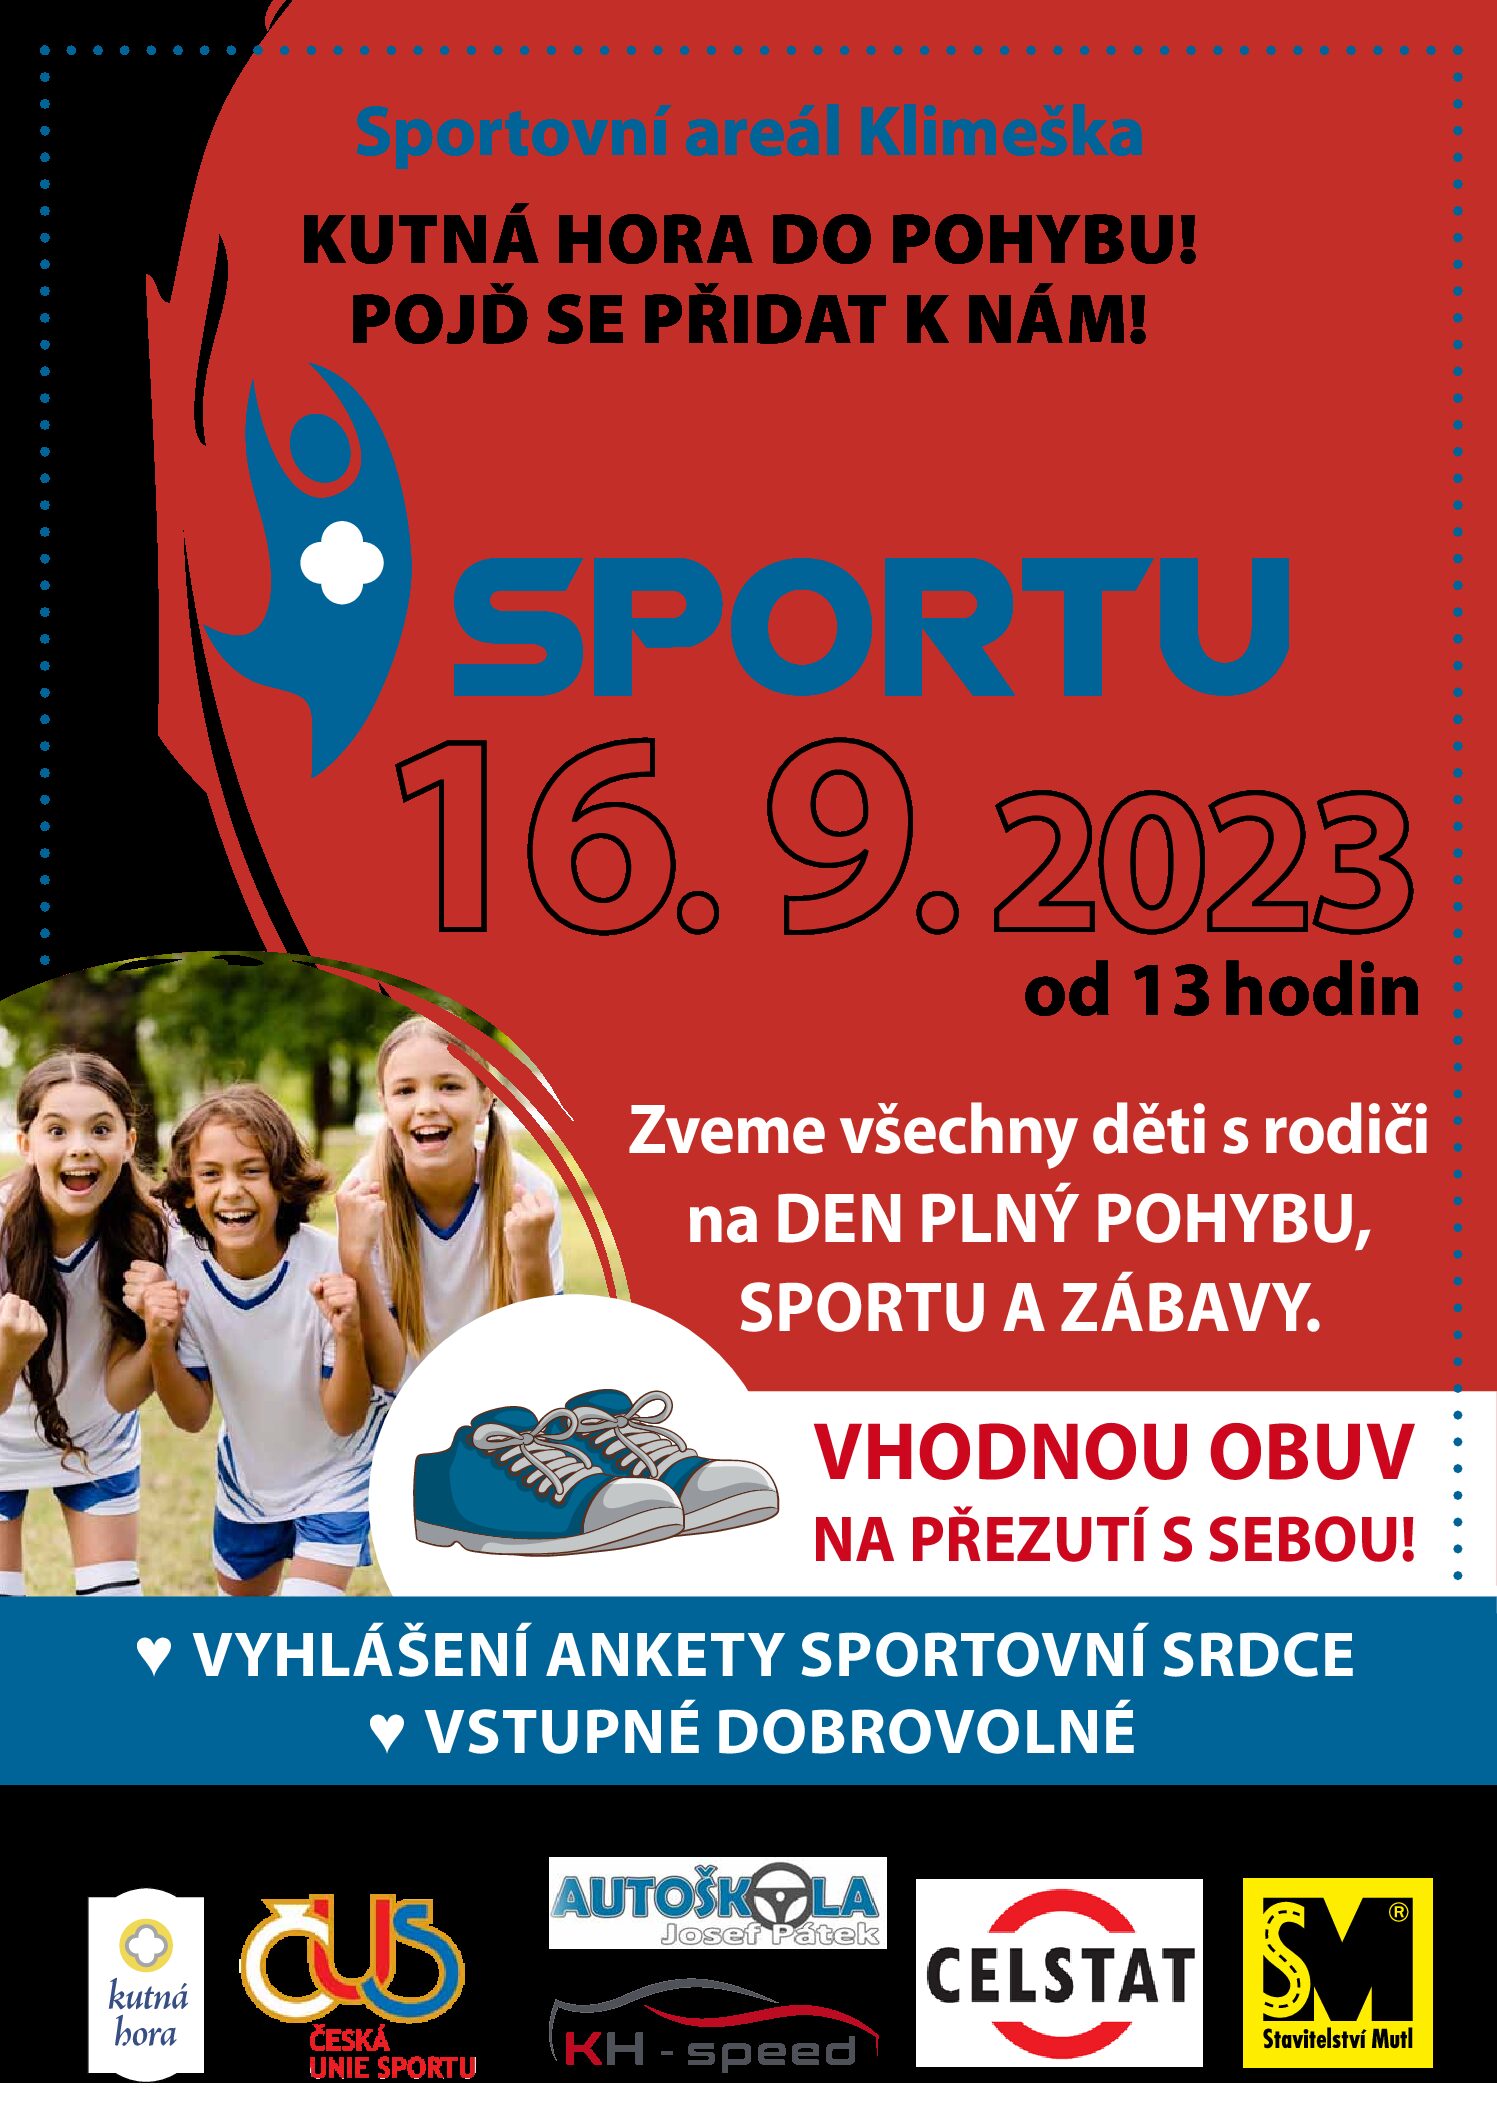 Kutná Hora v září ožije festivalem sportu